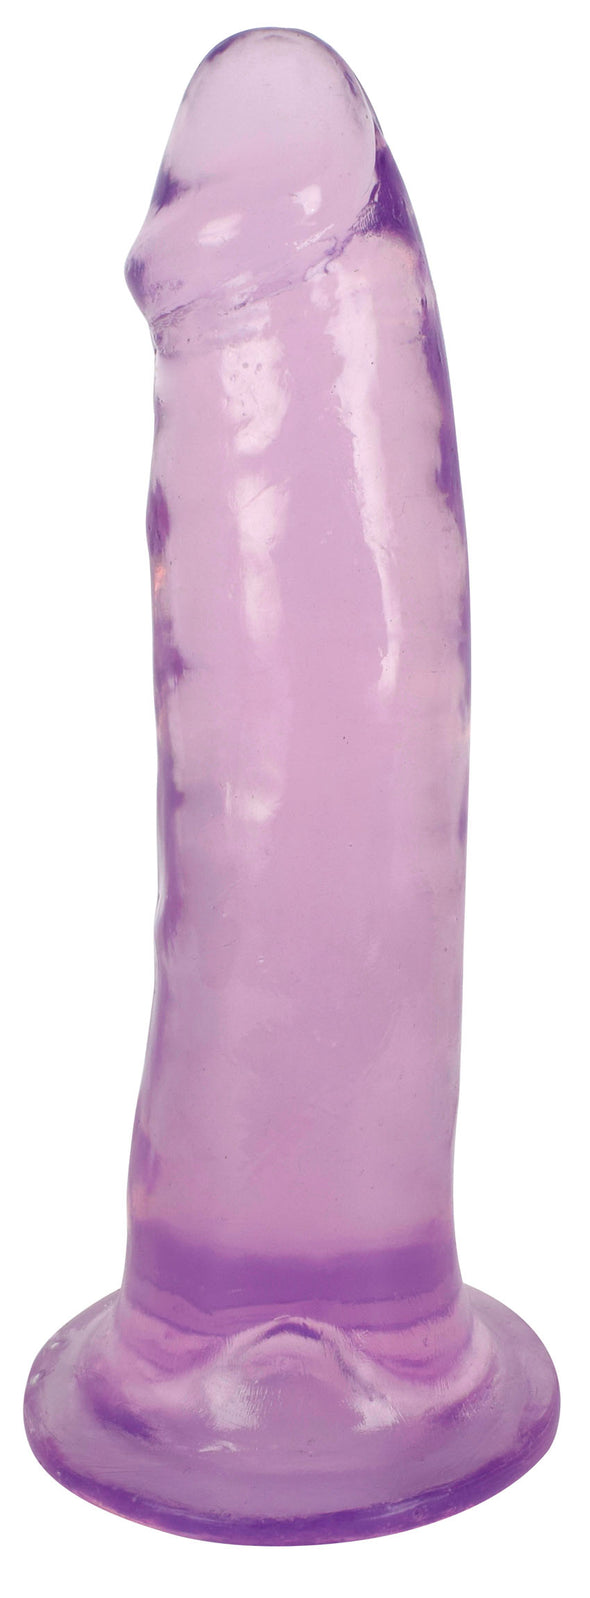 Lollicock 7 Inch Slim Stick - Grape Ice